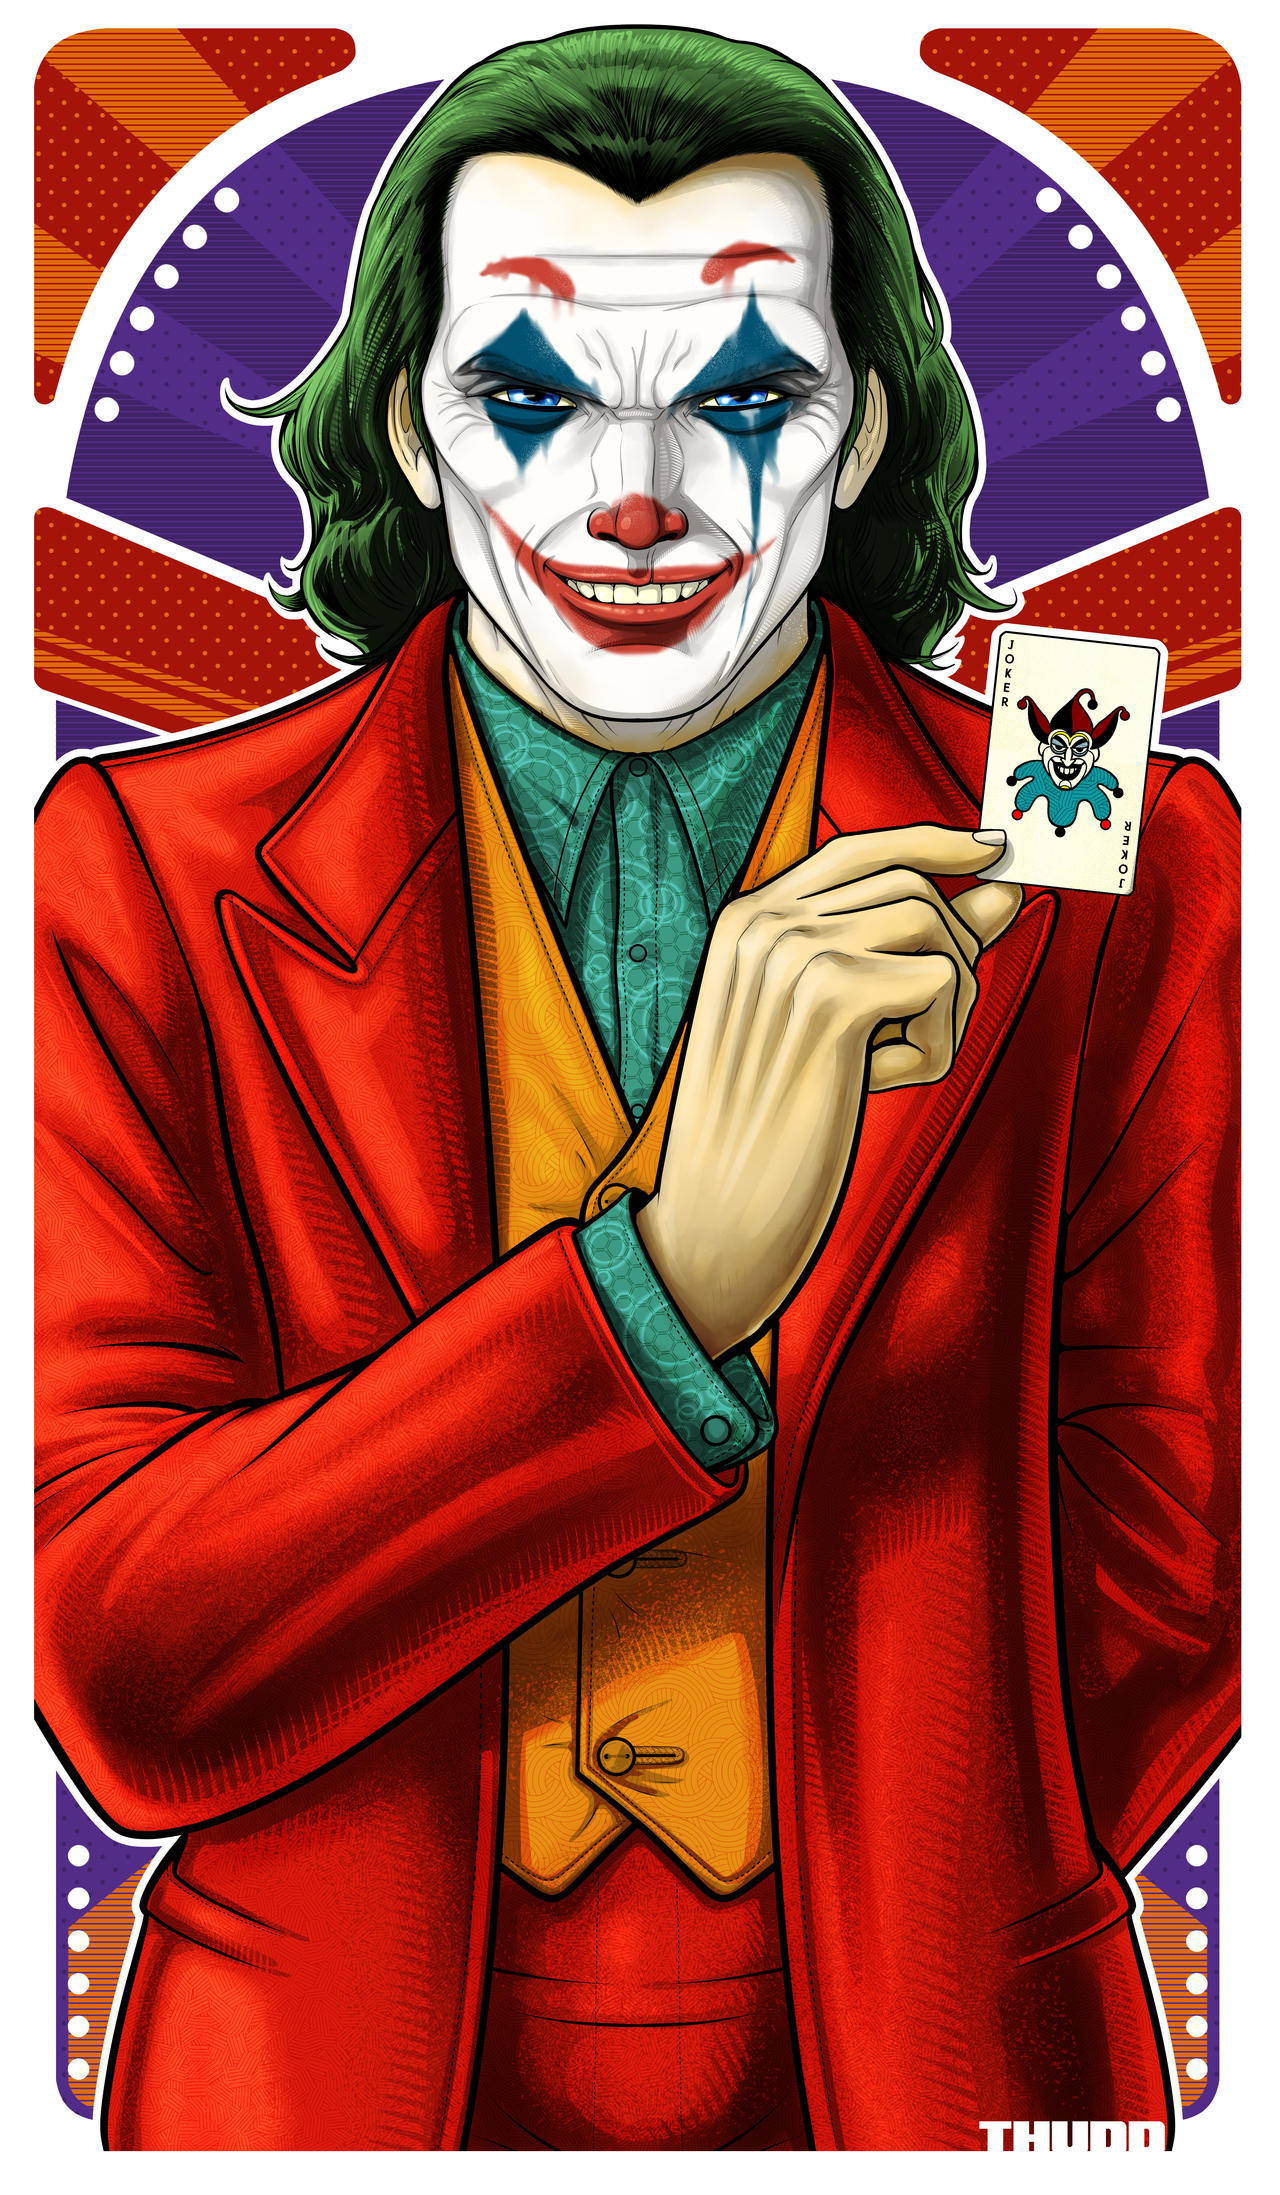 Phx Joker File by Thuddleston on DeviantArt